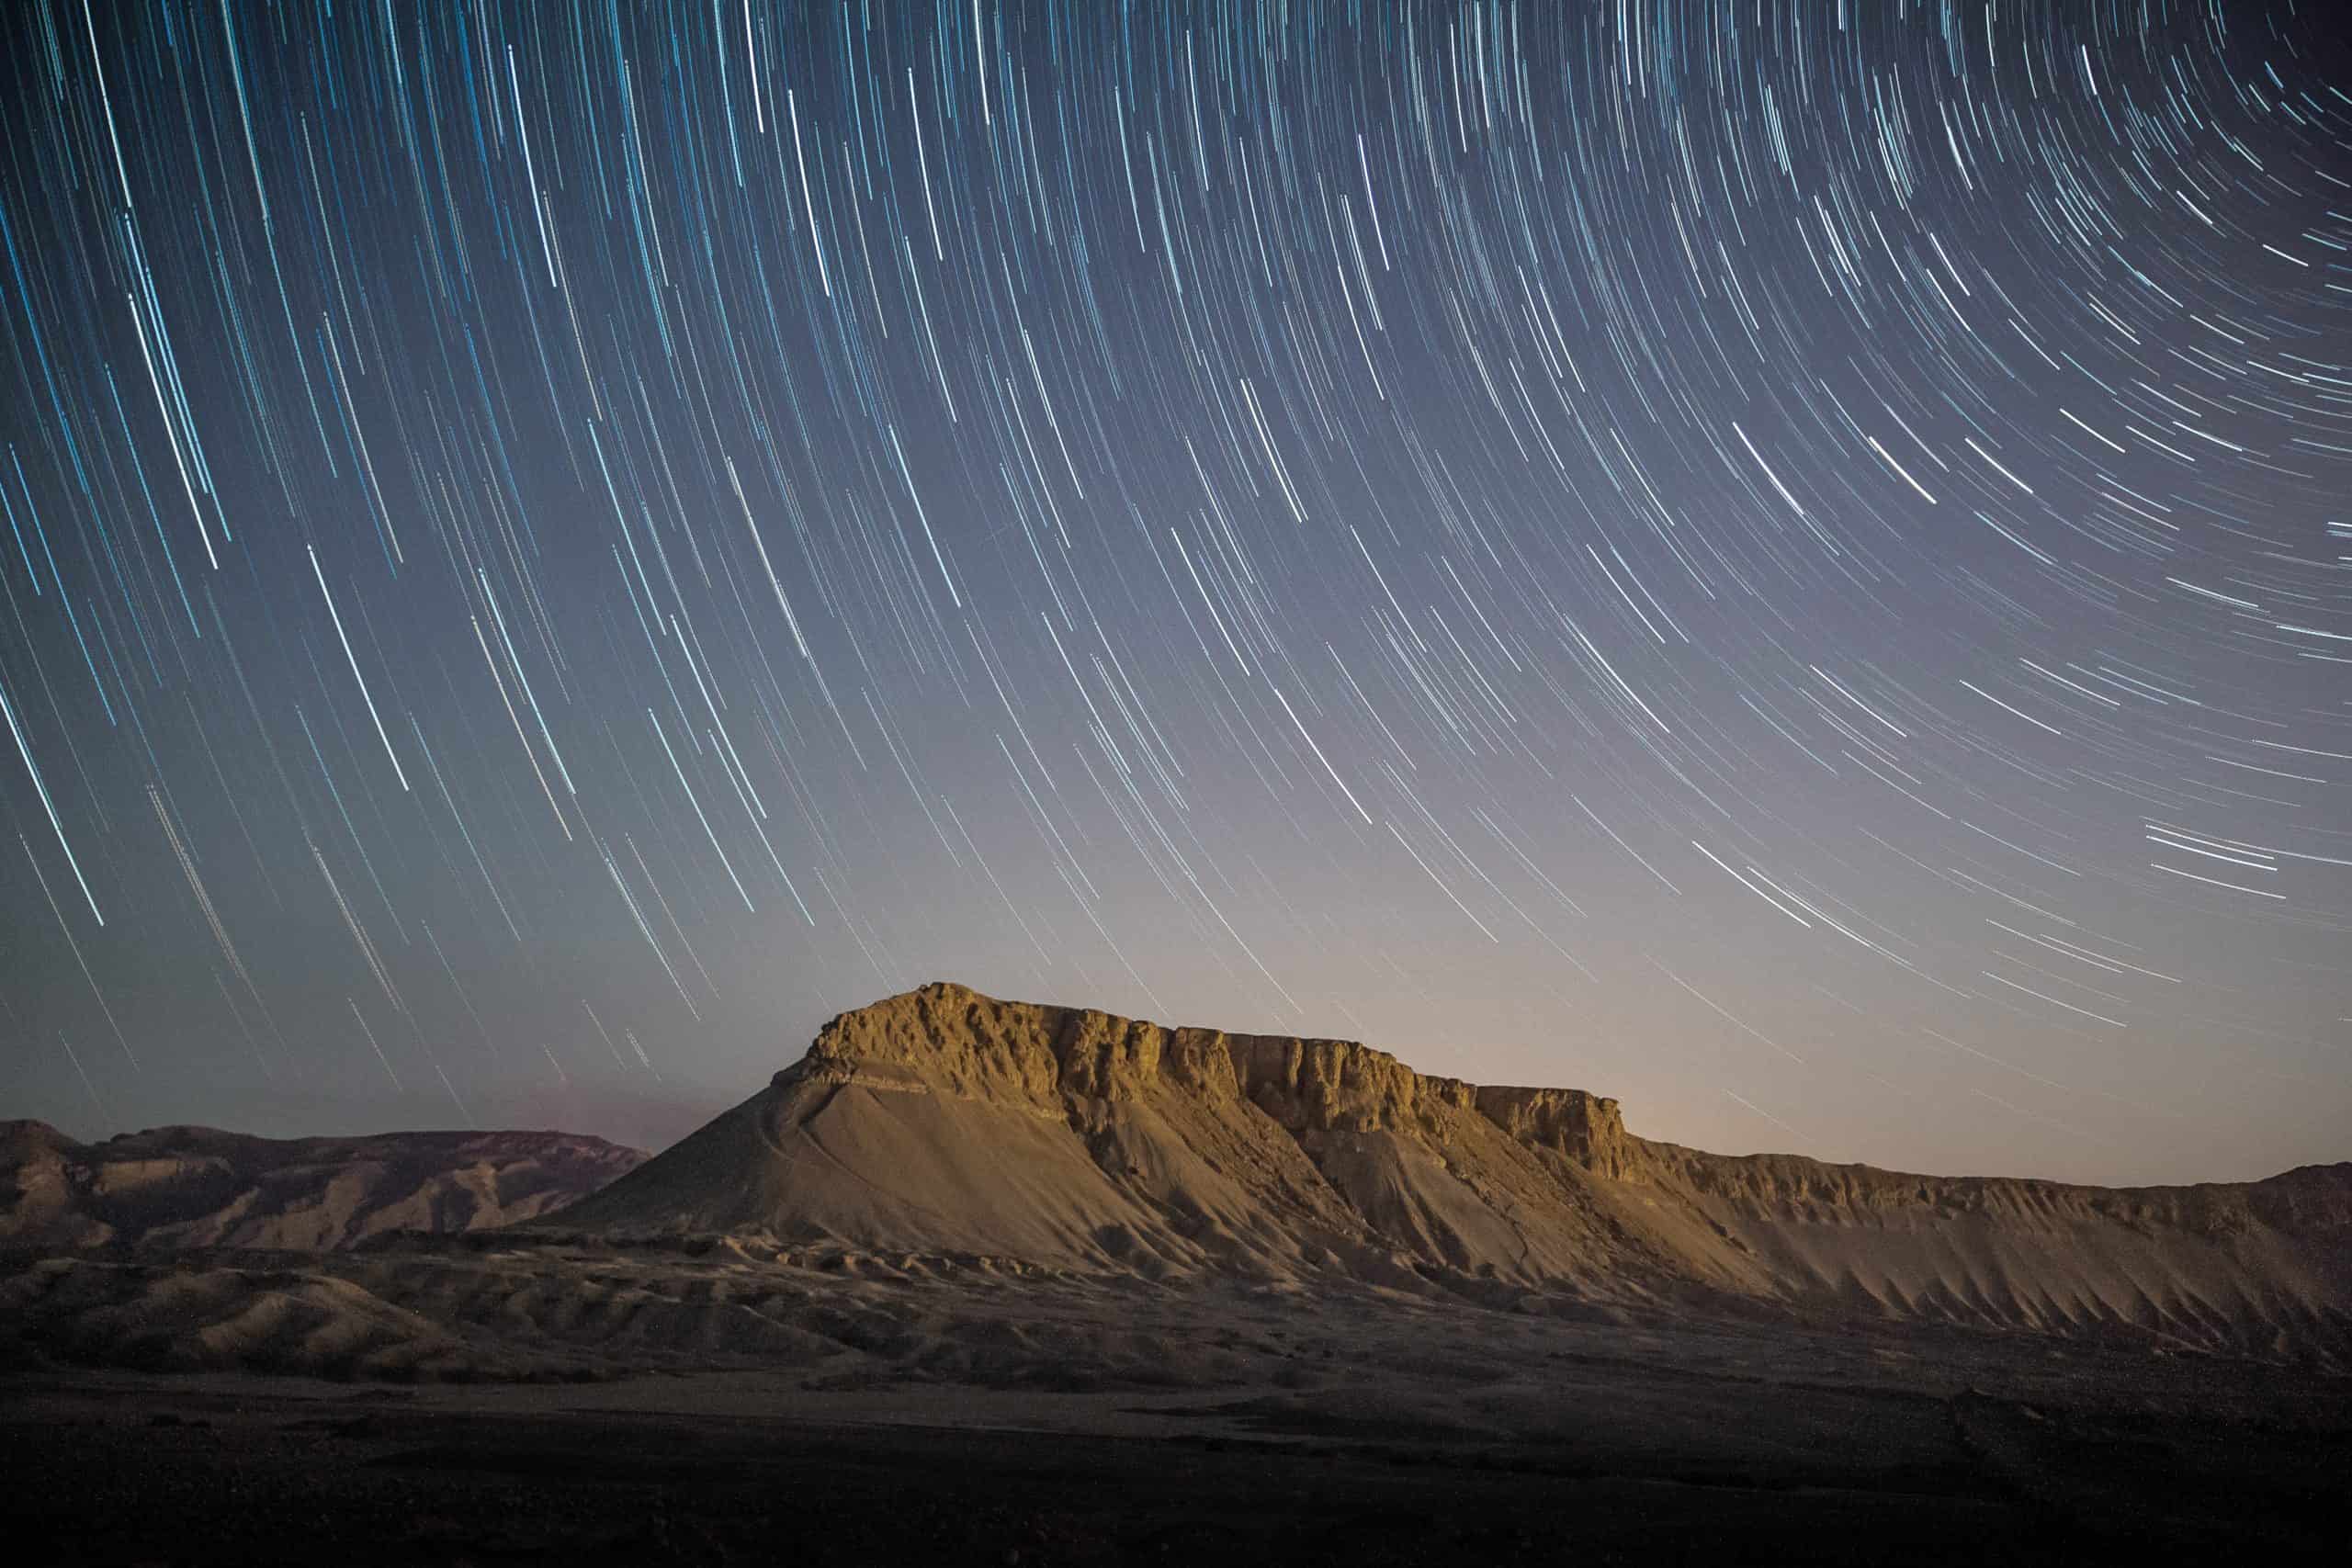 A desert mountain under a sky full of swirling stars